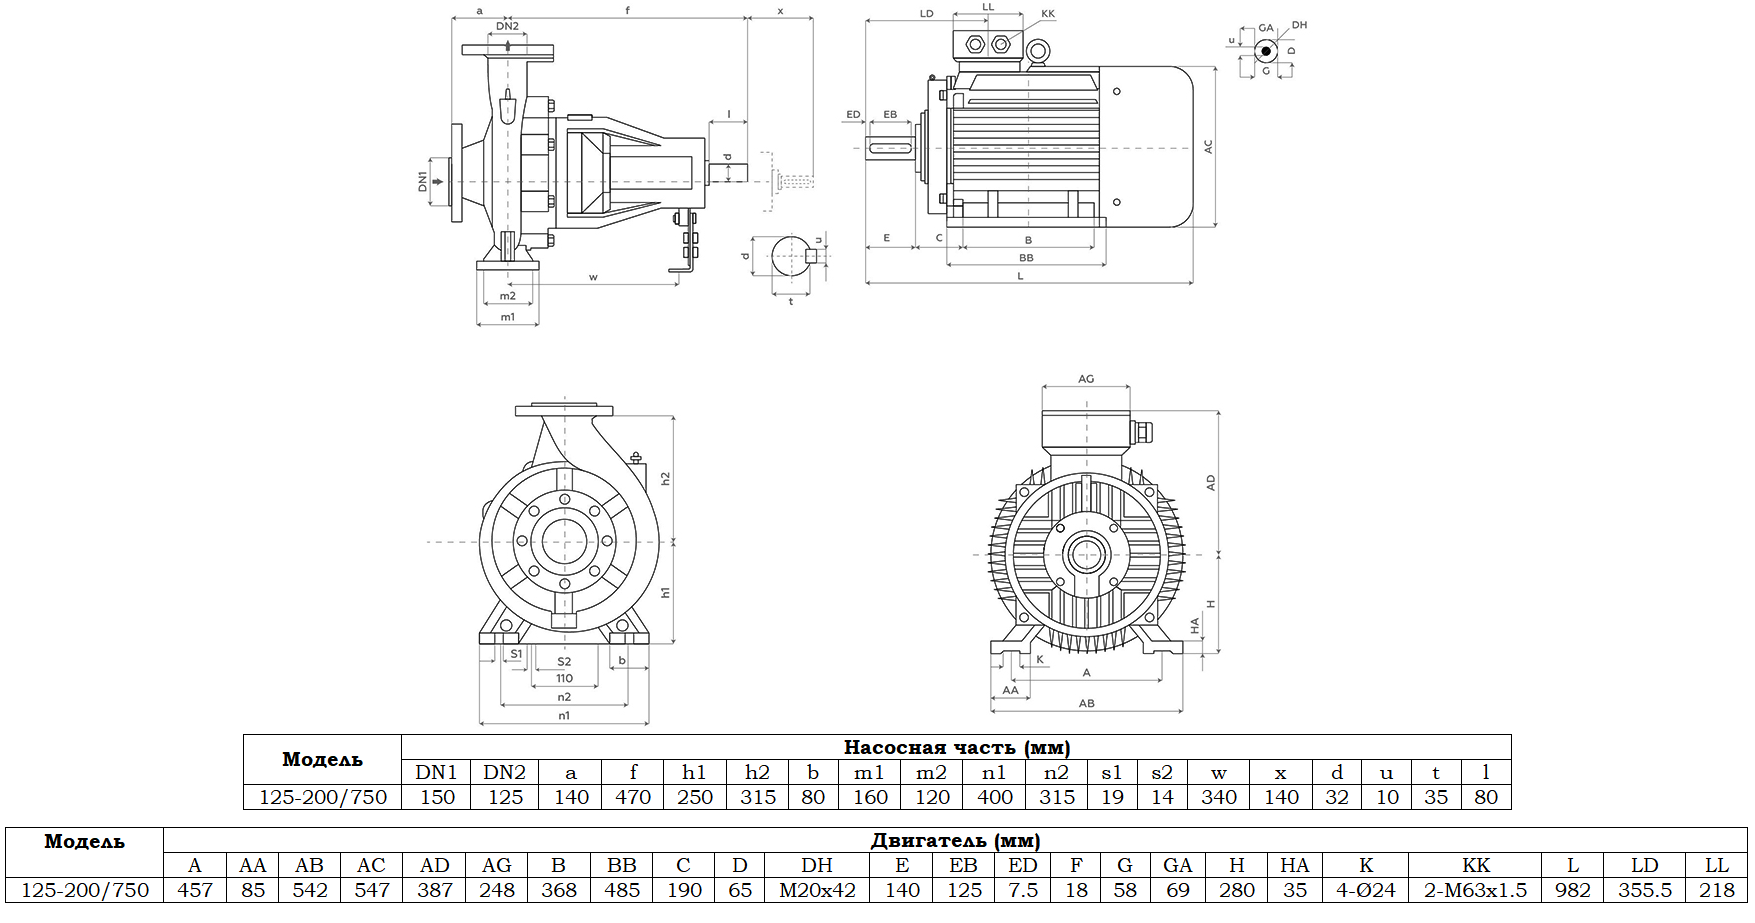 Габаритный чертеж модели Zenova SENSA 125-200/750